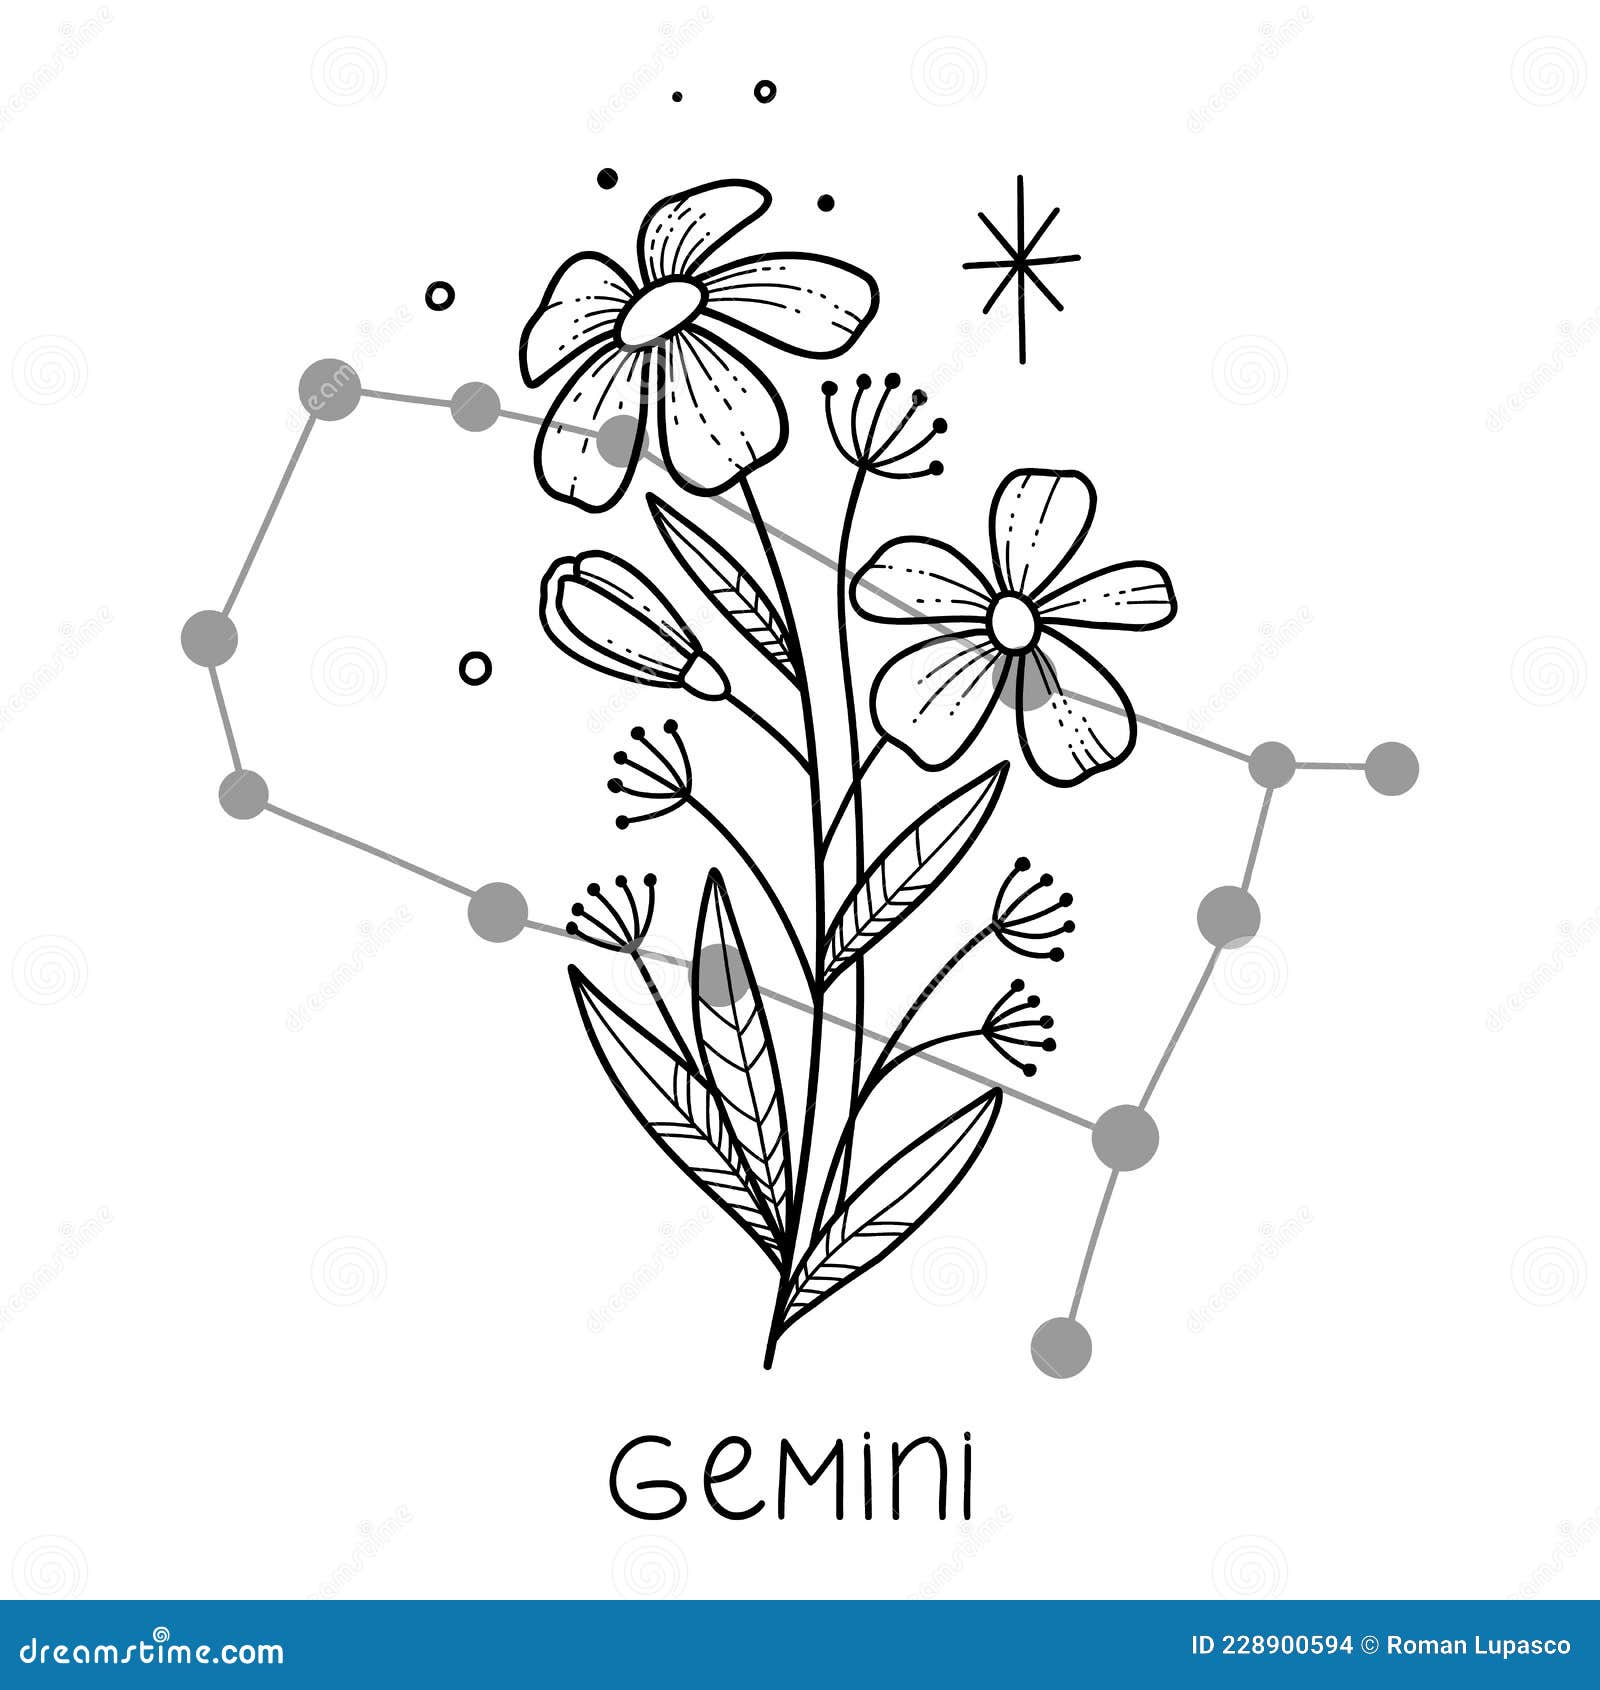 Birth Flower Tattoo Ideas for Every Zodiac Sign  Hypebae